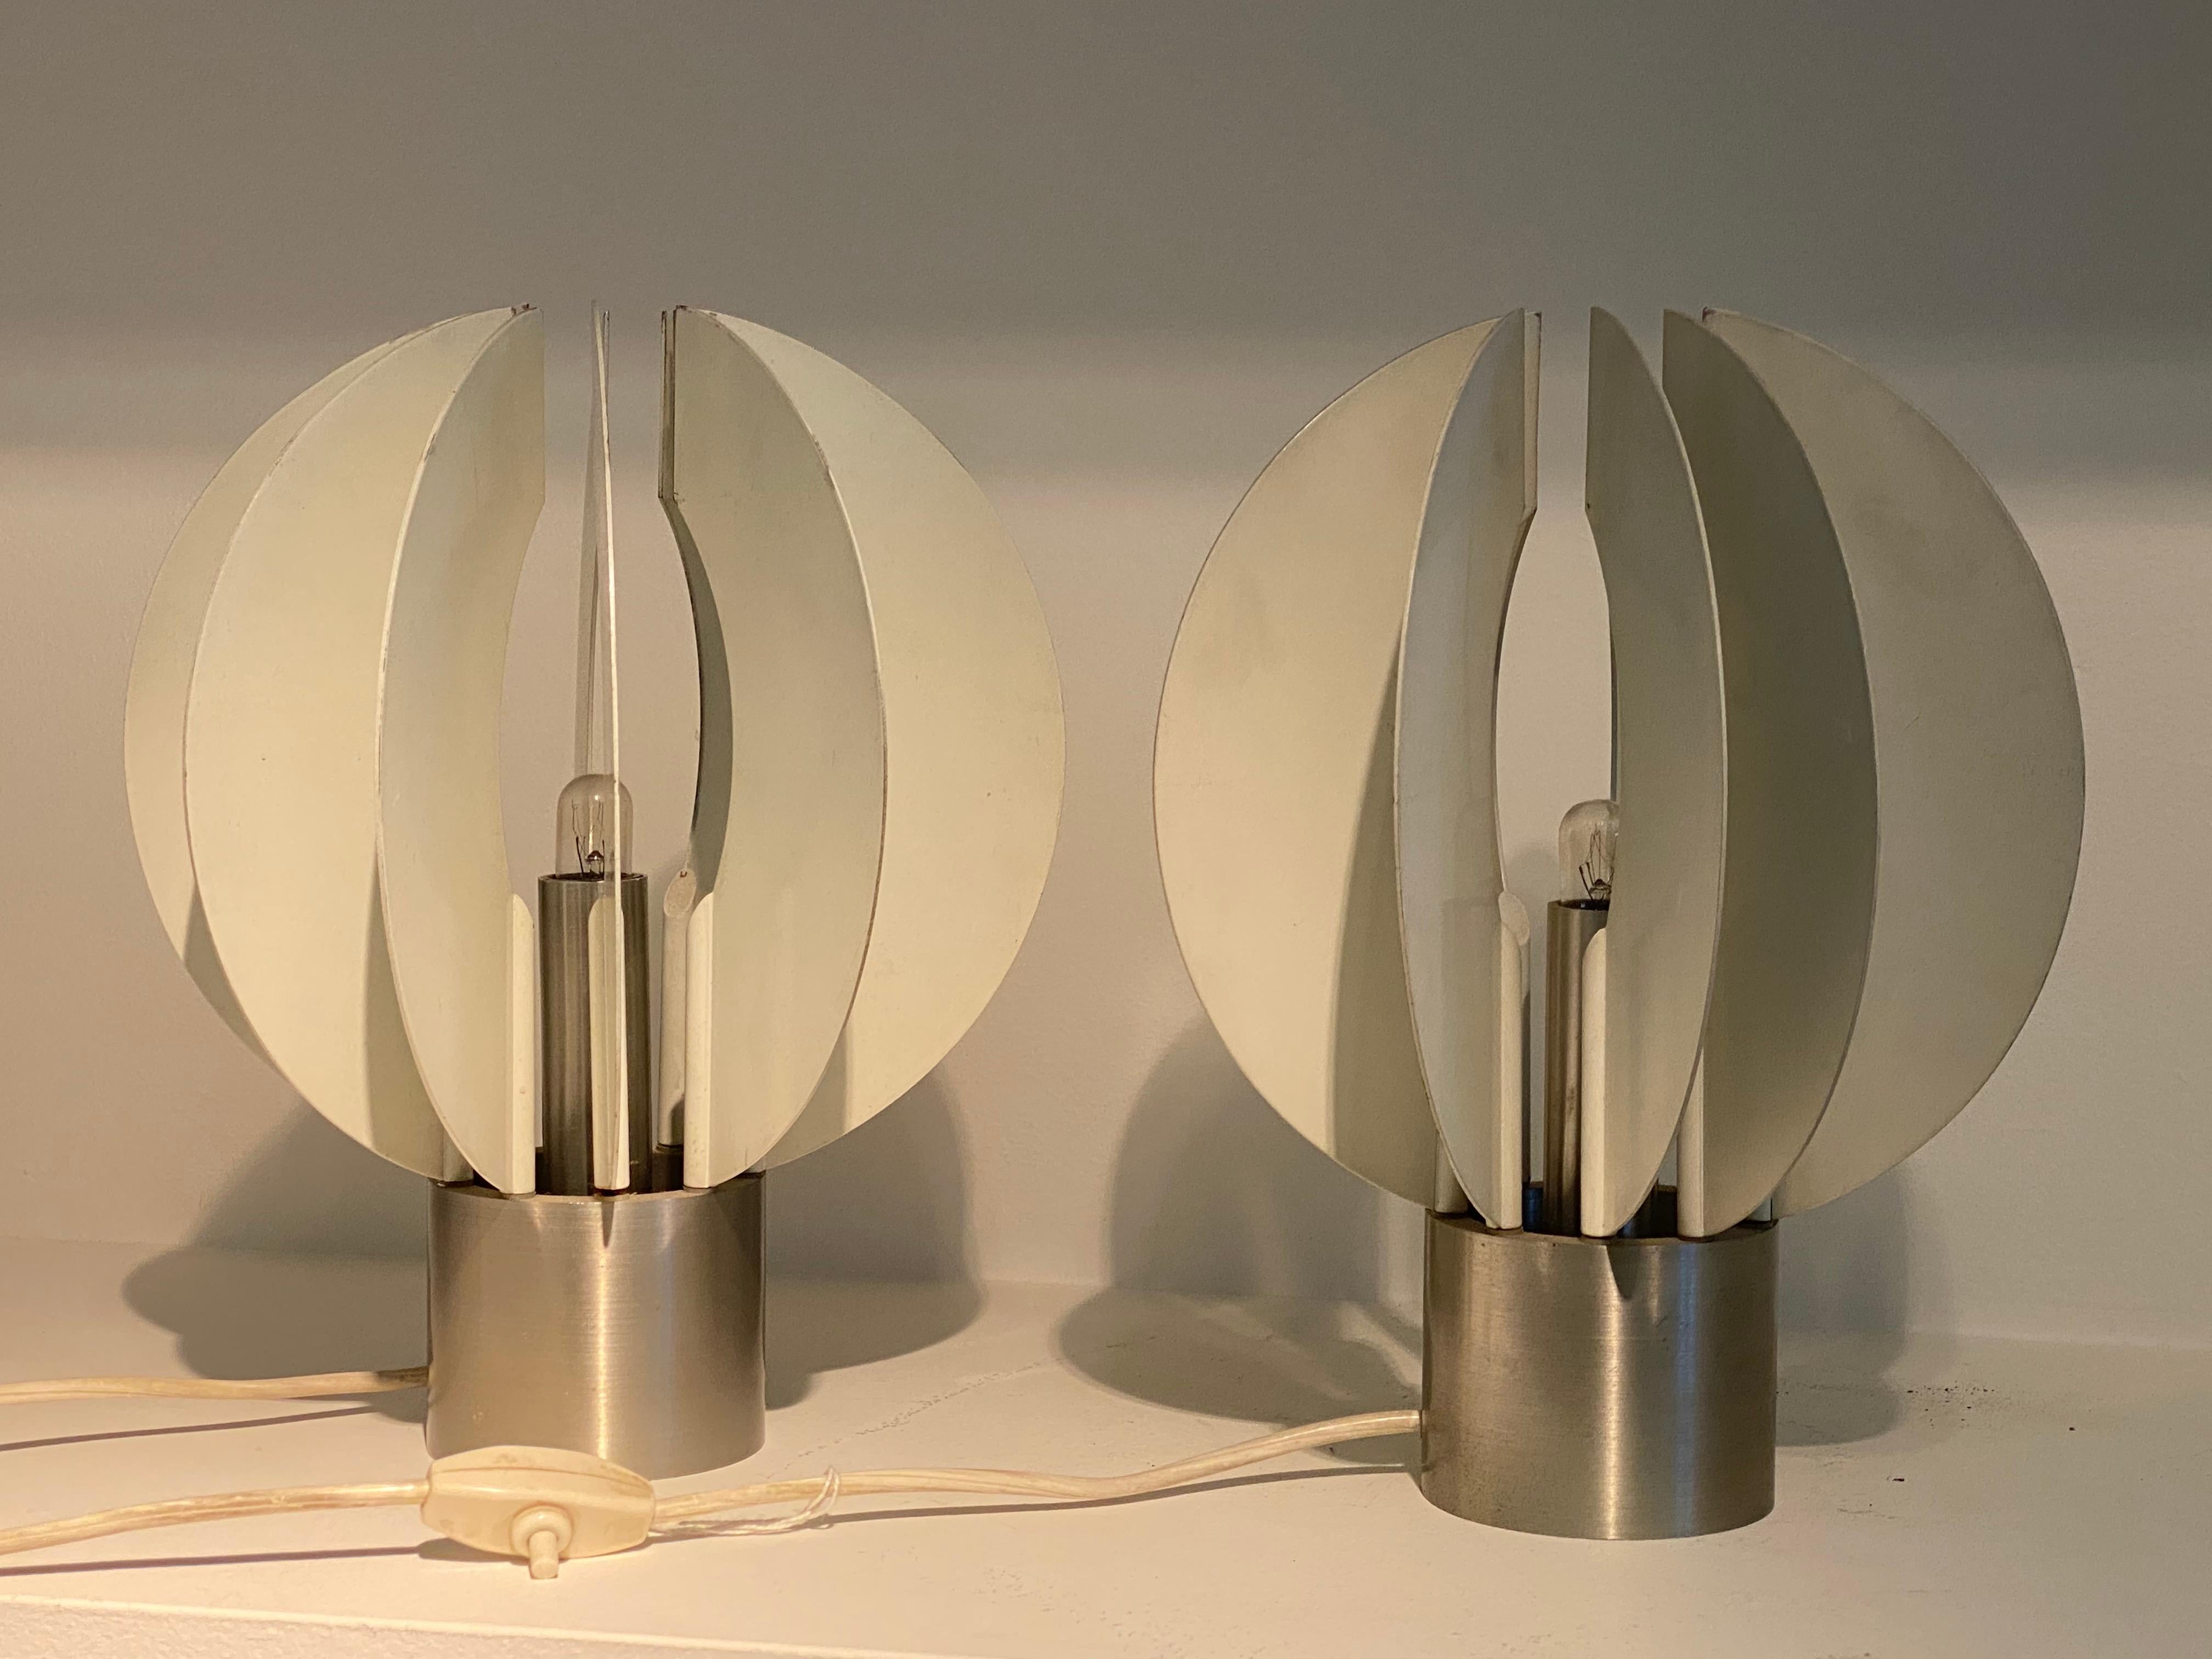 Belle paire de lampes de table en métal,Italie,1970?couleur blanche
avec des parties métalliques mobiles,
pour que la lampe puisse être utilisée dans différents supports,
entièrement fonctionnel.